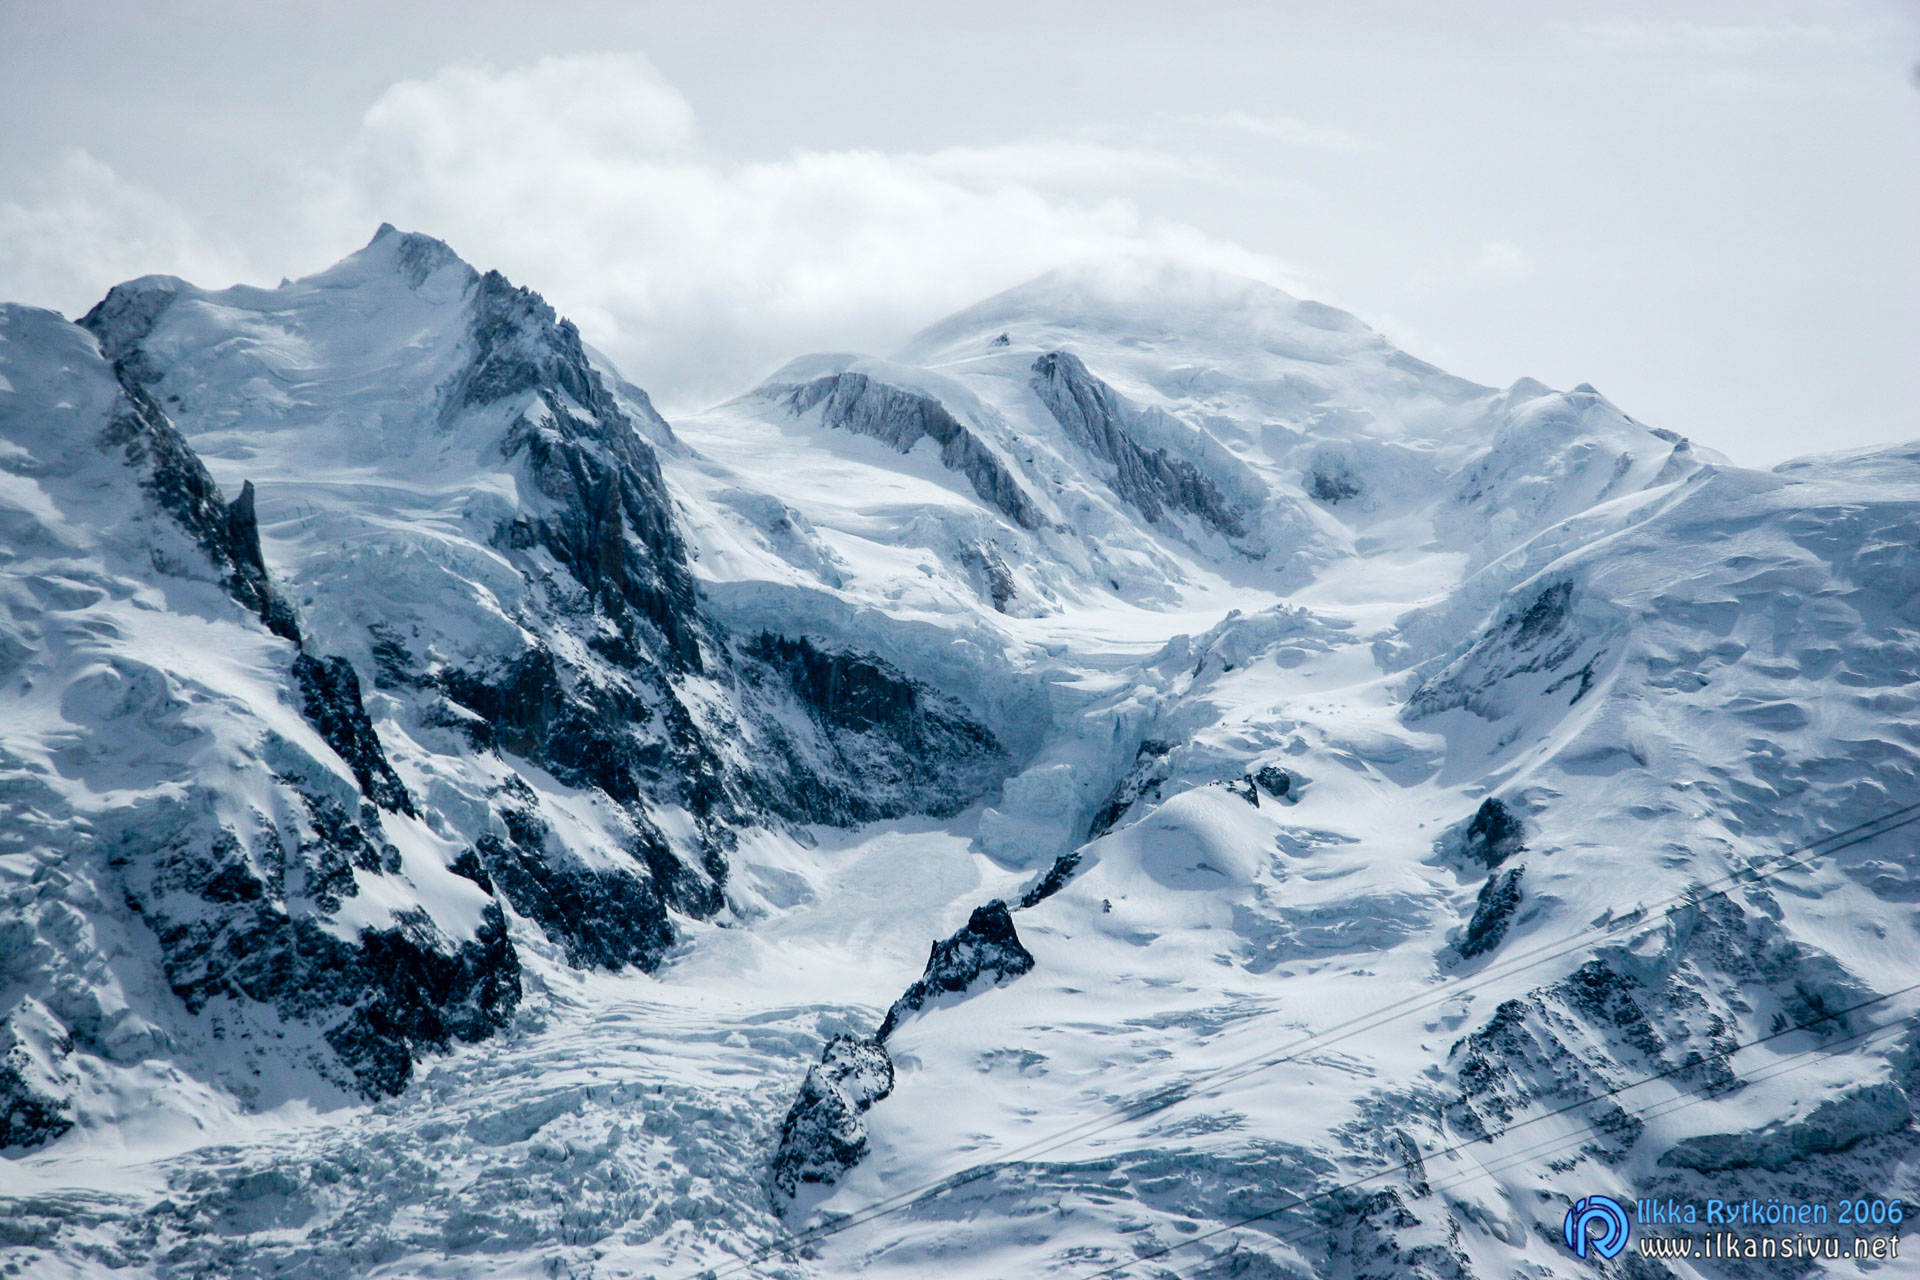 Mont Blanc (4808 m), Länsi-Euroopan korkein vuori